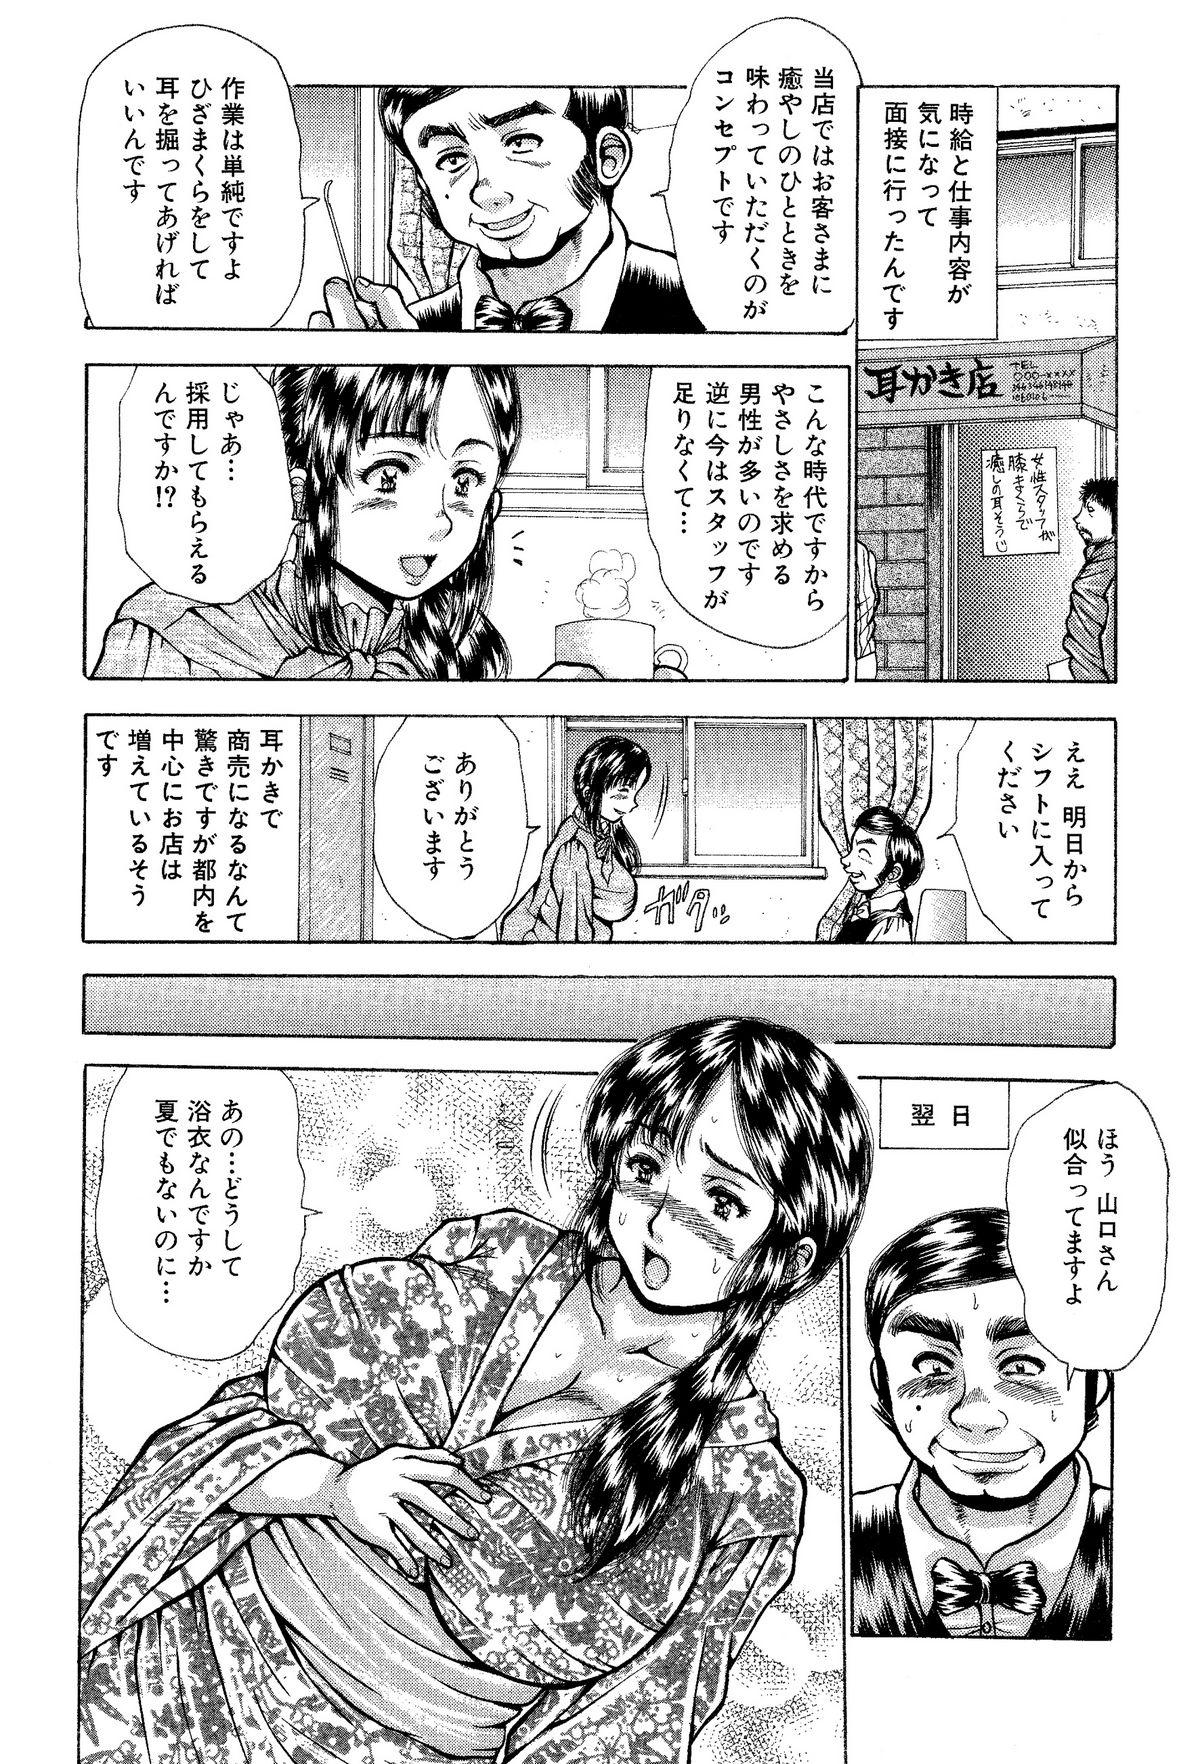 Hardcore Sex Itai Oku-san Manga o Atsumetemita 3some - Page 5